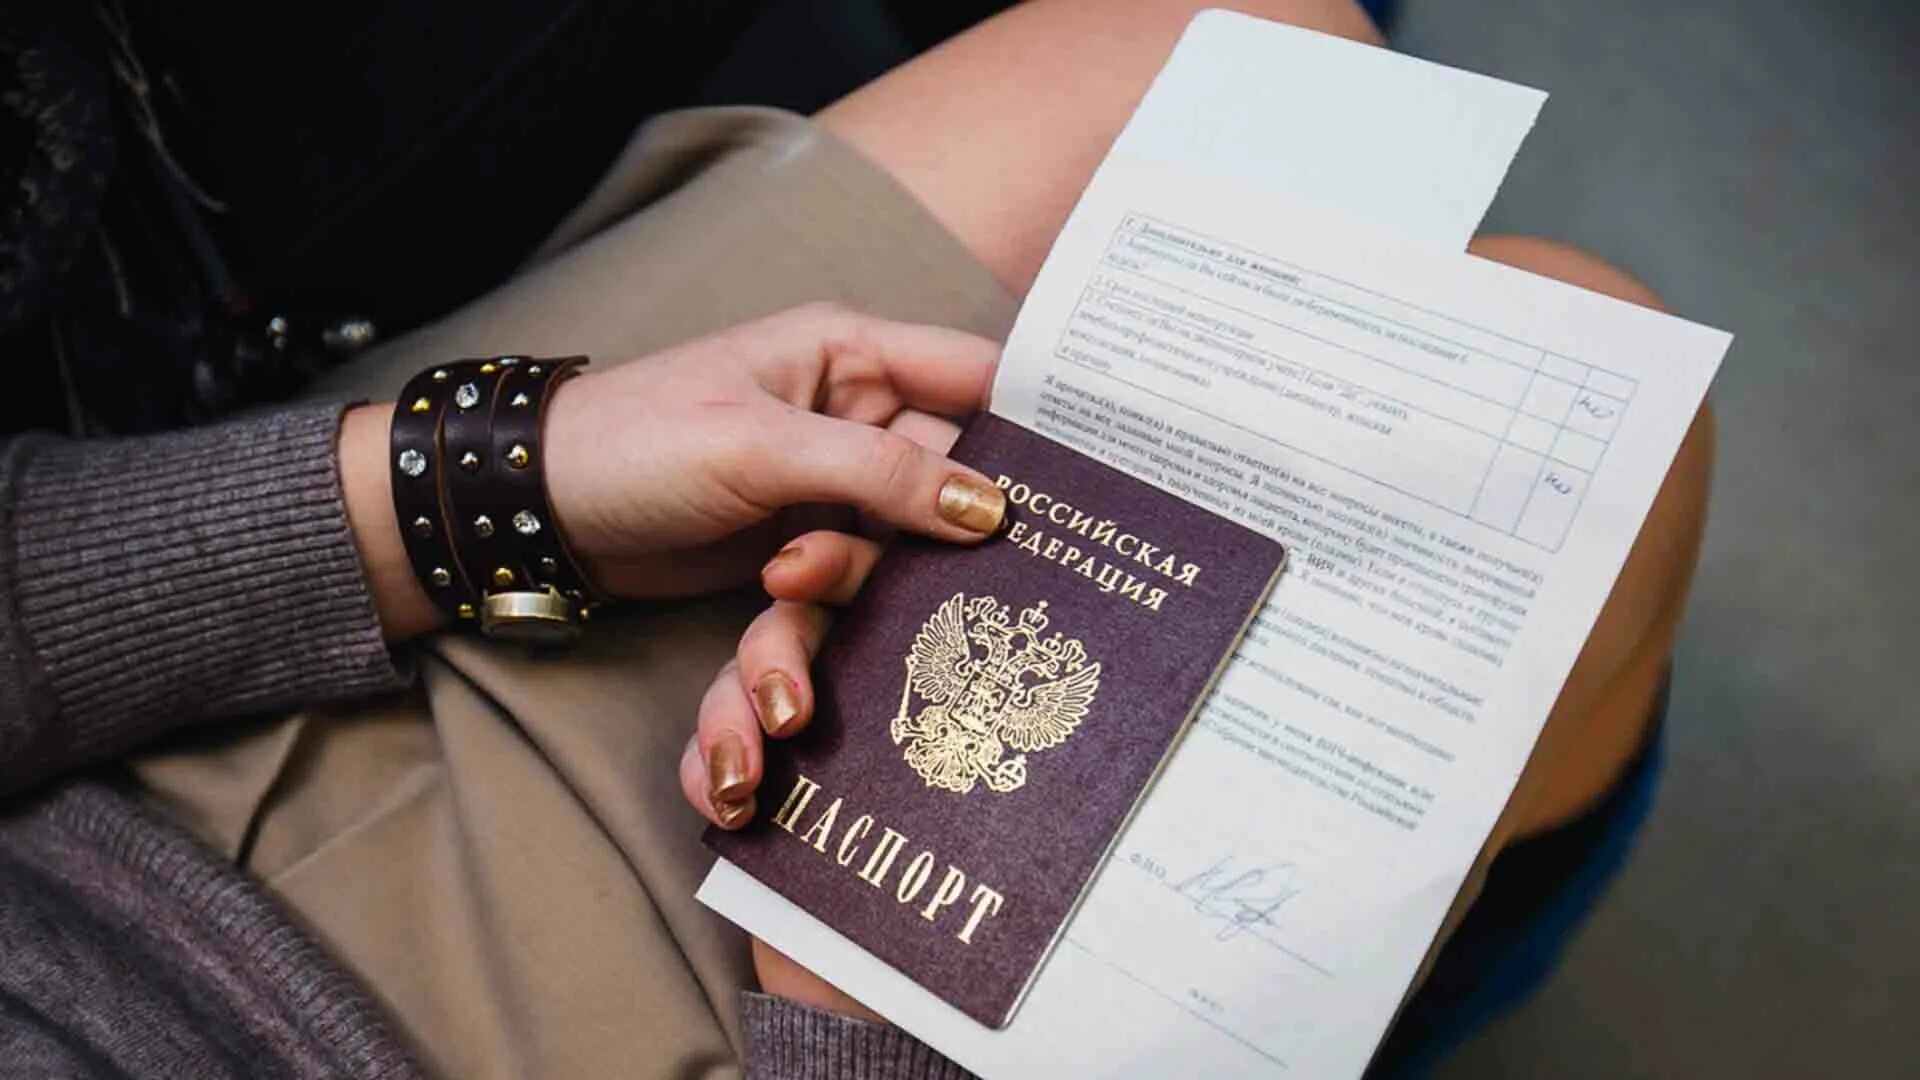 Перемена имени гражданина россии подлежит государственной регистрации. Документы в руках. Свидетельство о перемене имени.